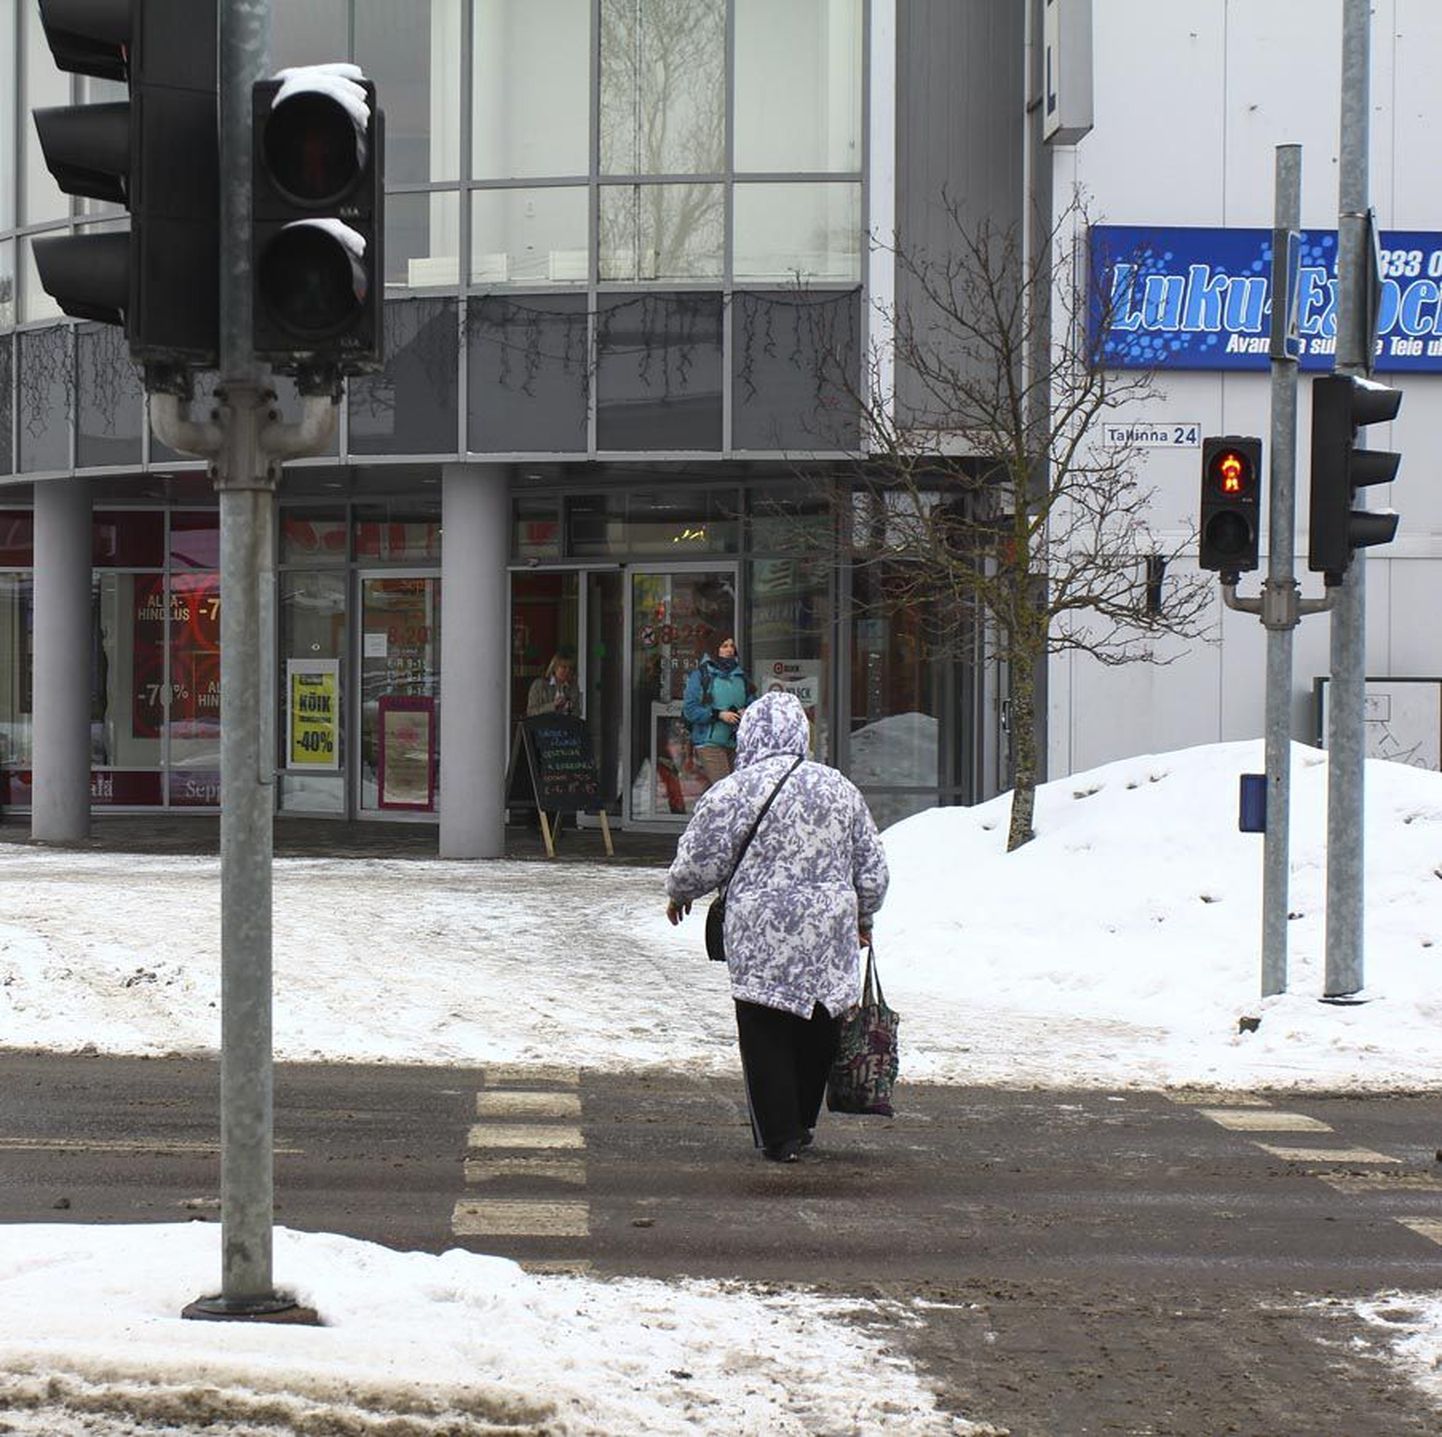 Viljandis Centrumi kaubanduskeskuse juurest üle Tallinna tänava viival vöötrajal näeb tihti jalakäijaid, kes jõuavad teisele poole teed siis, kui foor näitab juba punast tuld.